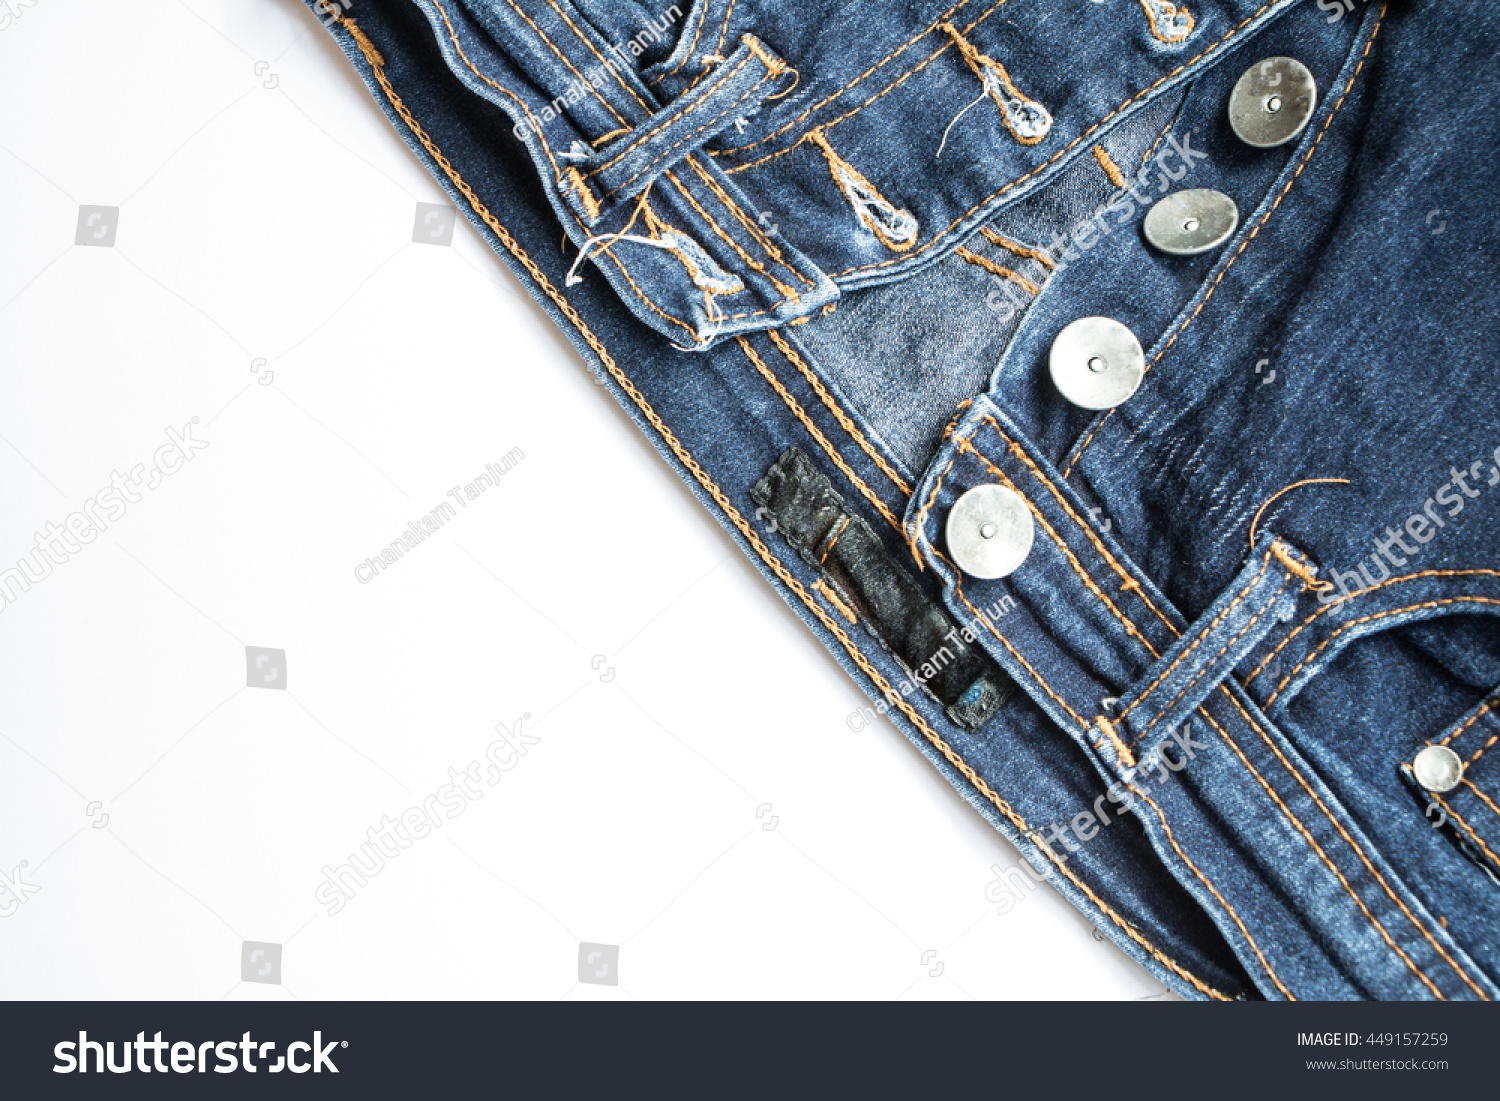 button crotch jeans